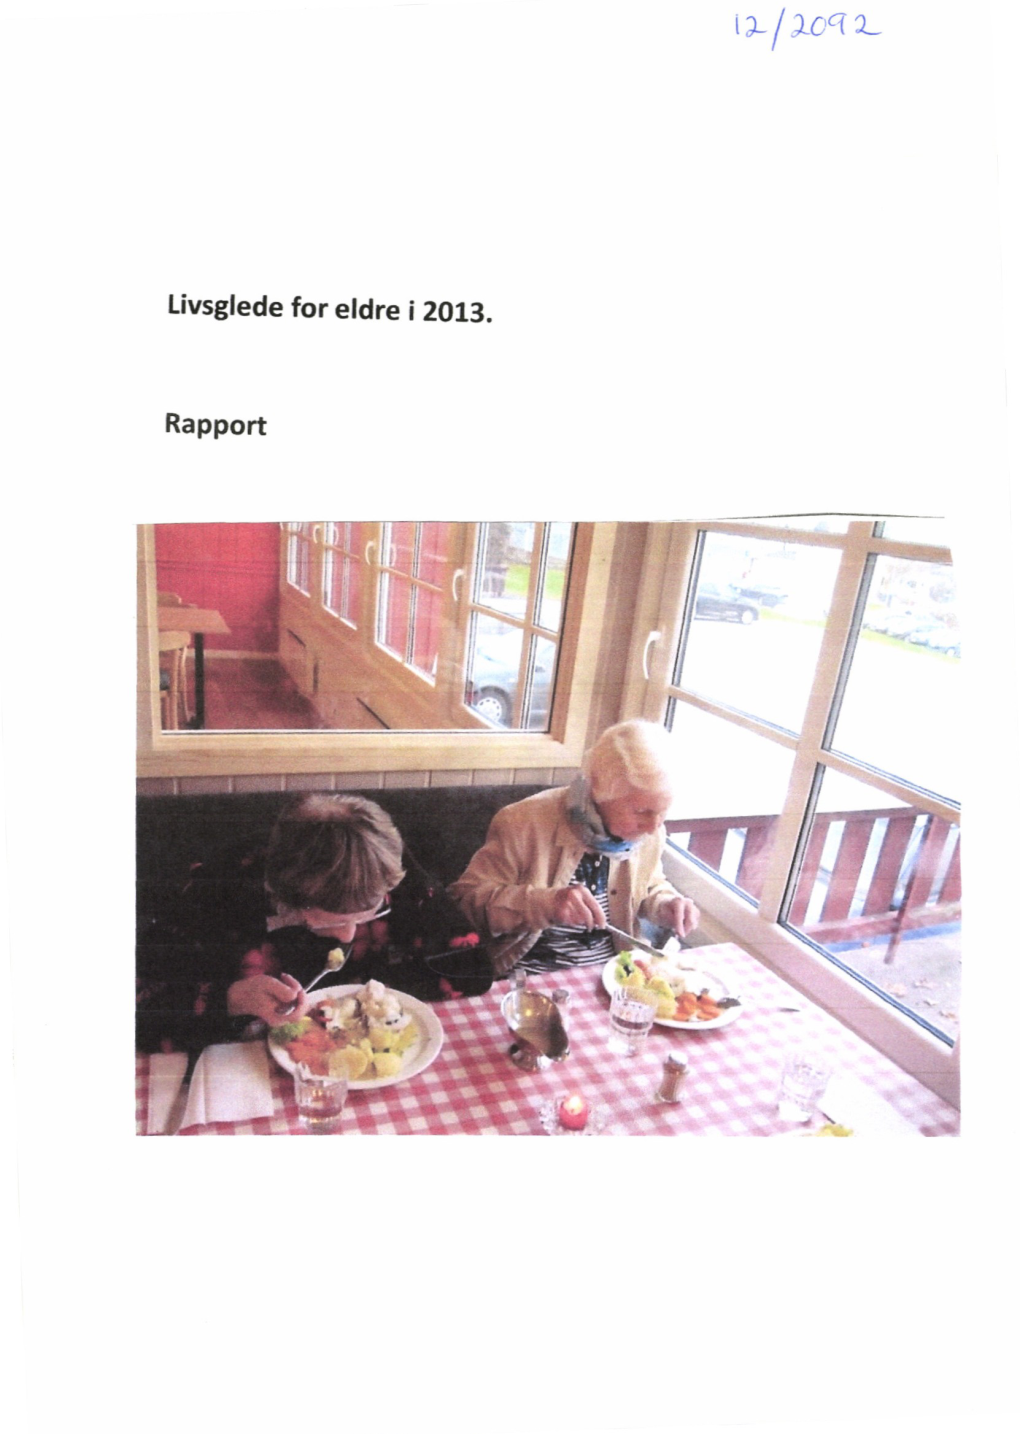 Livsglede for Eldre I 2013. Rapport